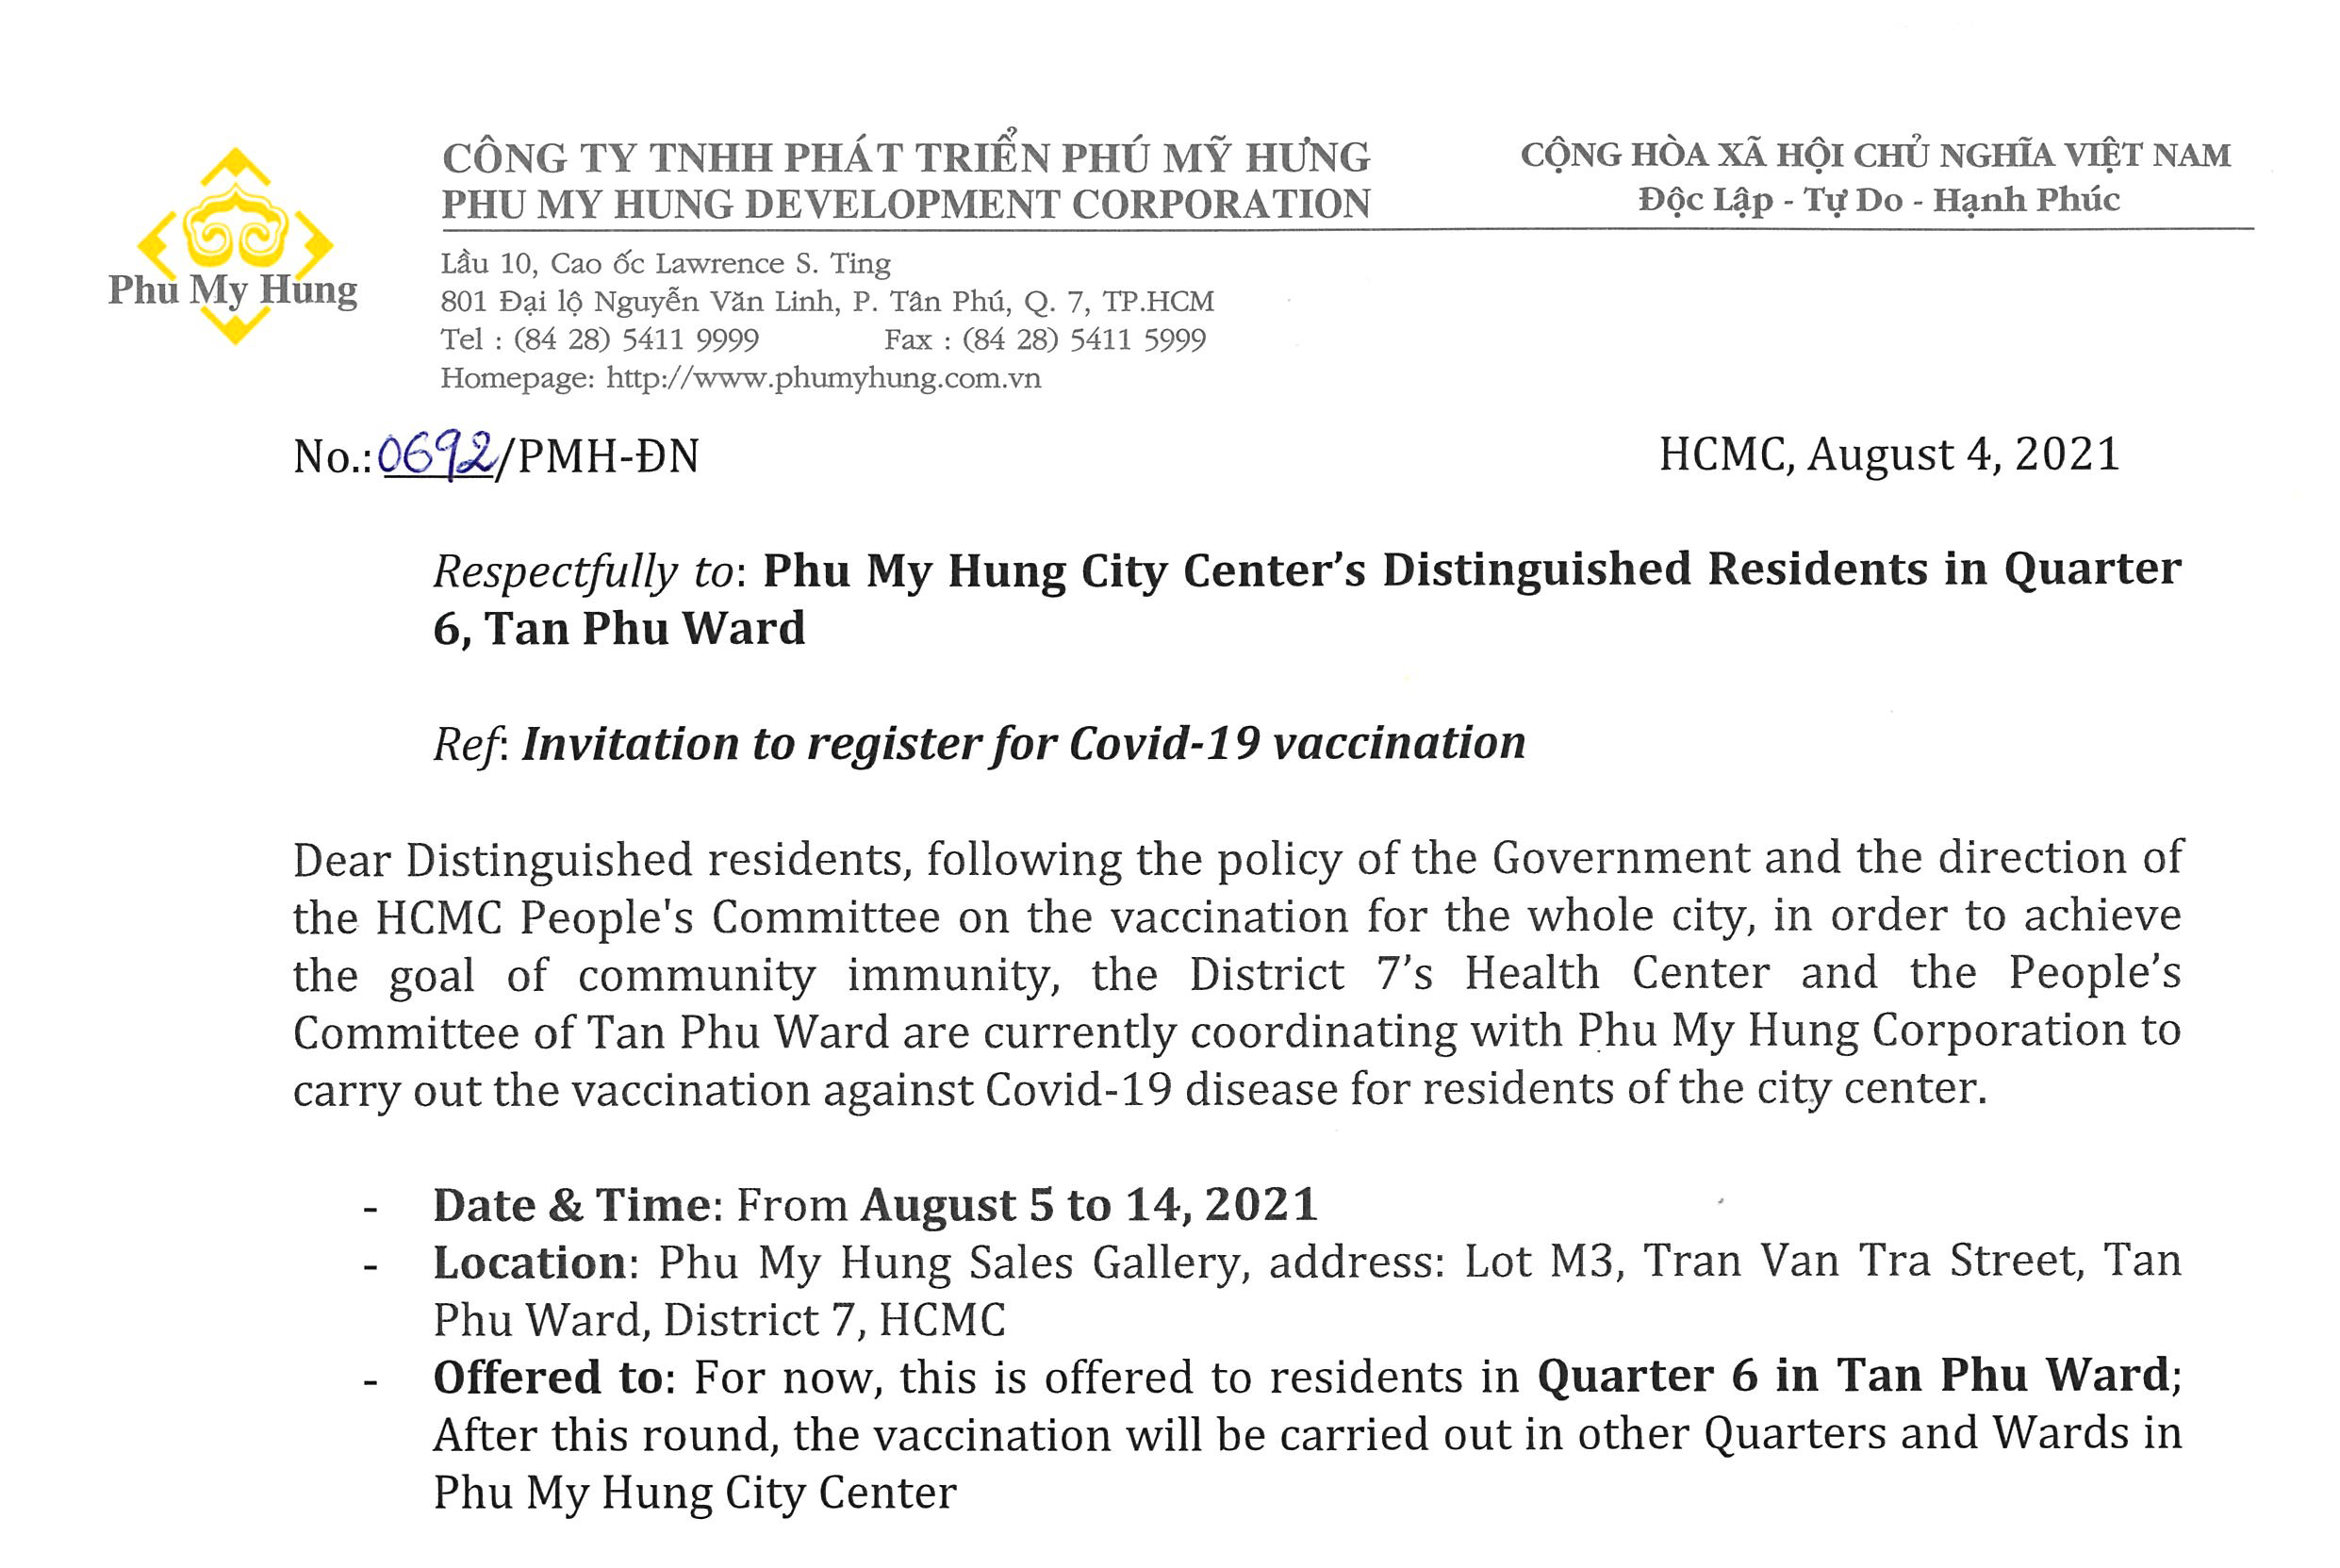 Invitation to register for Covid-19 vaccination